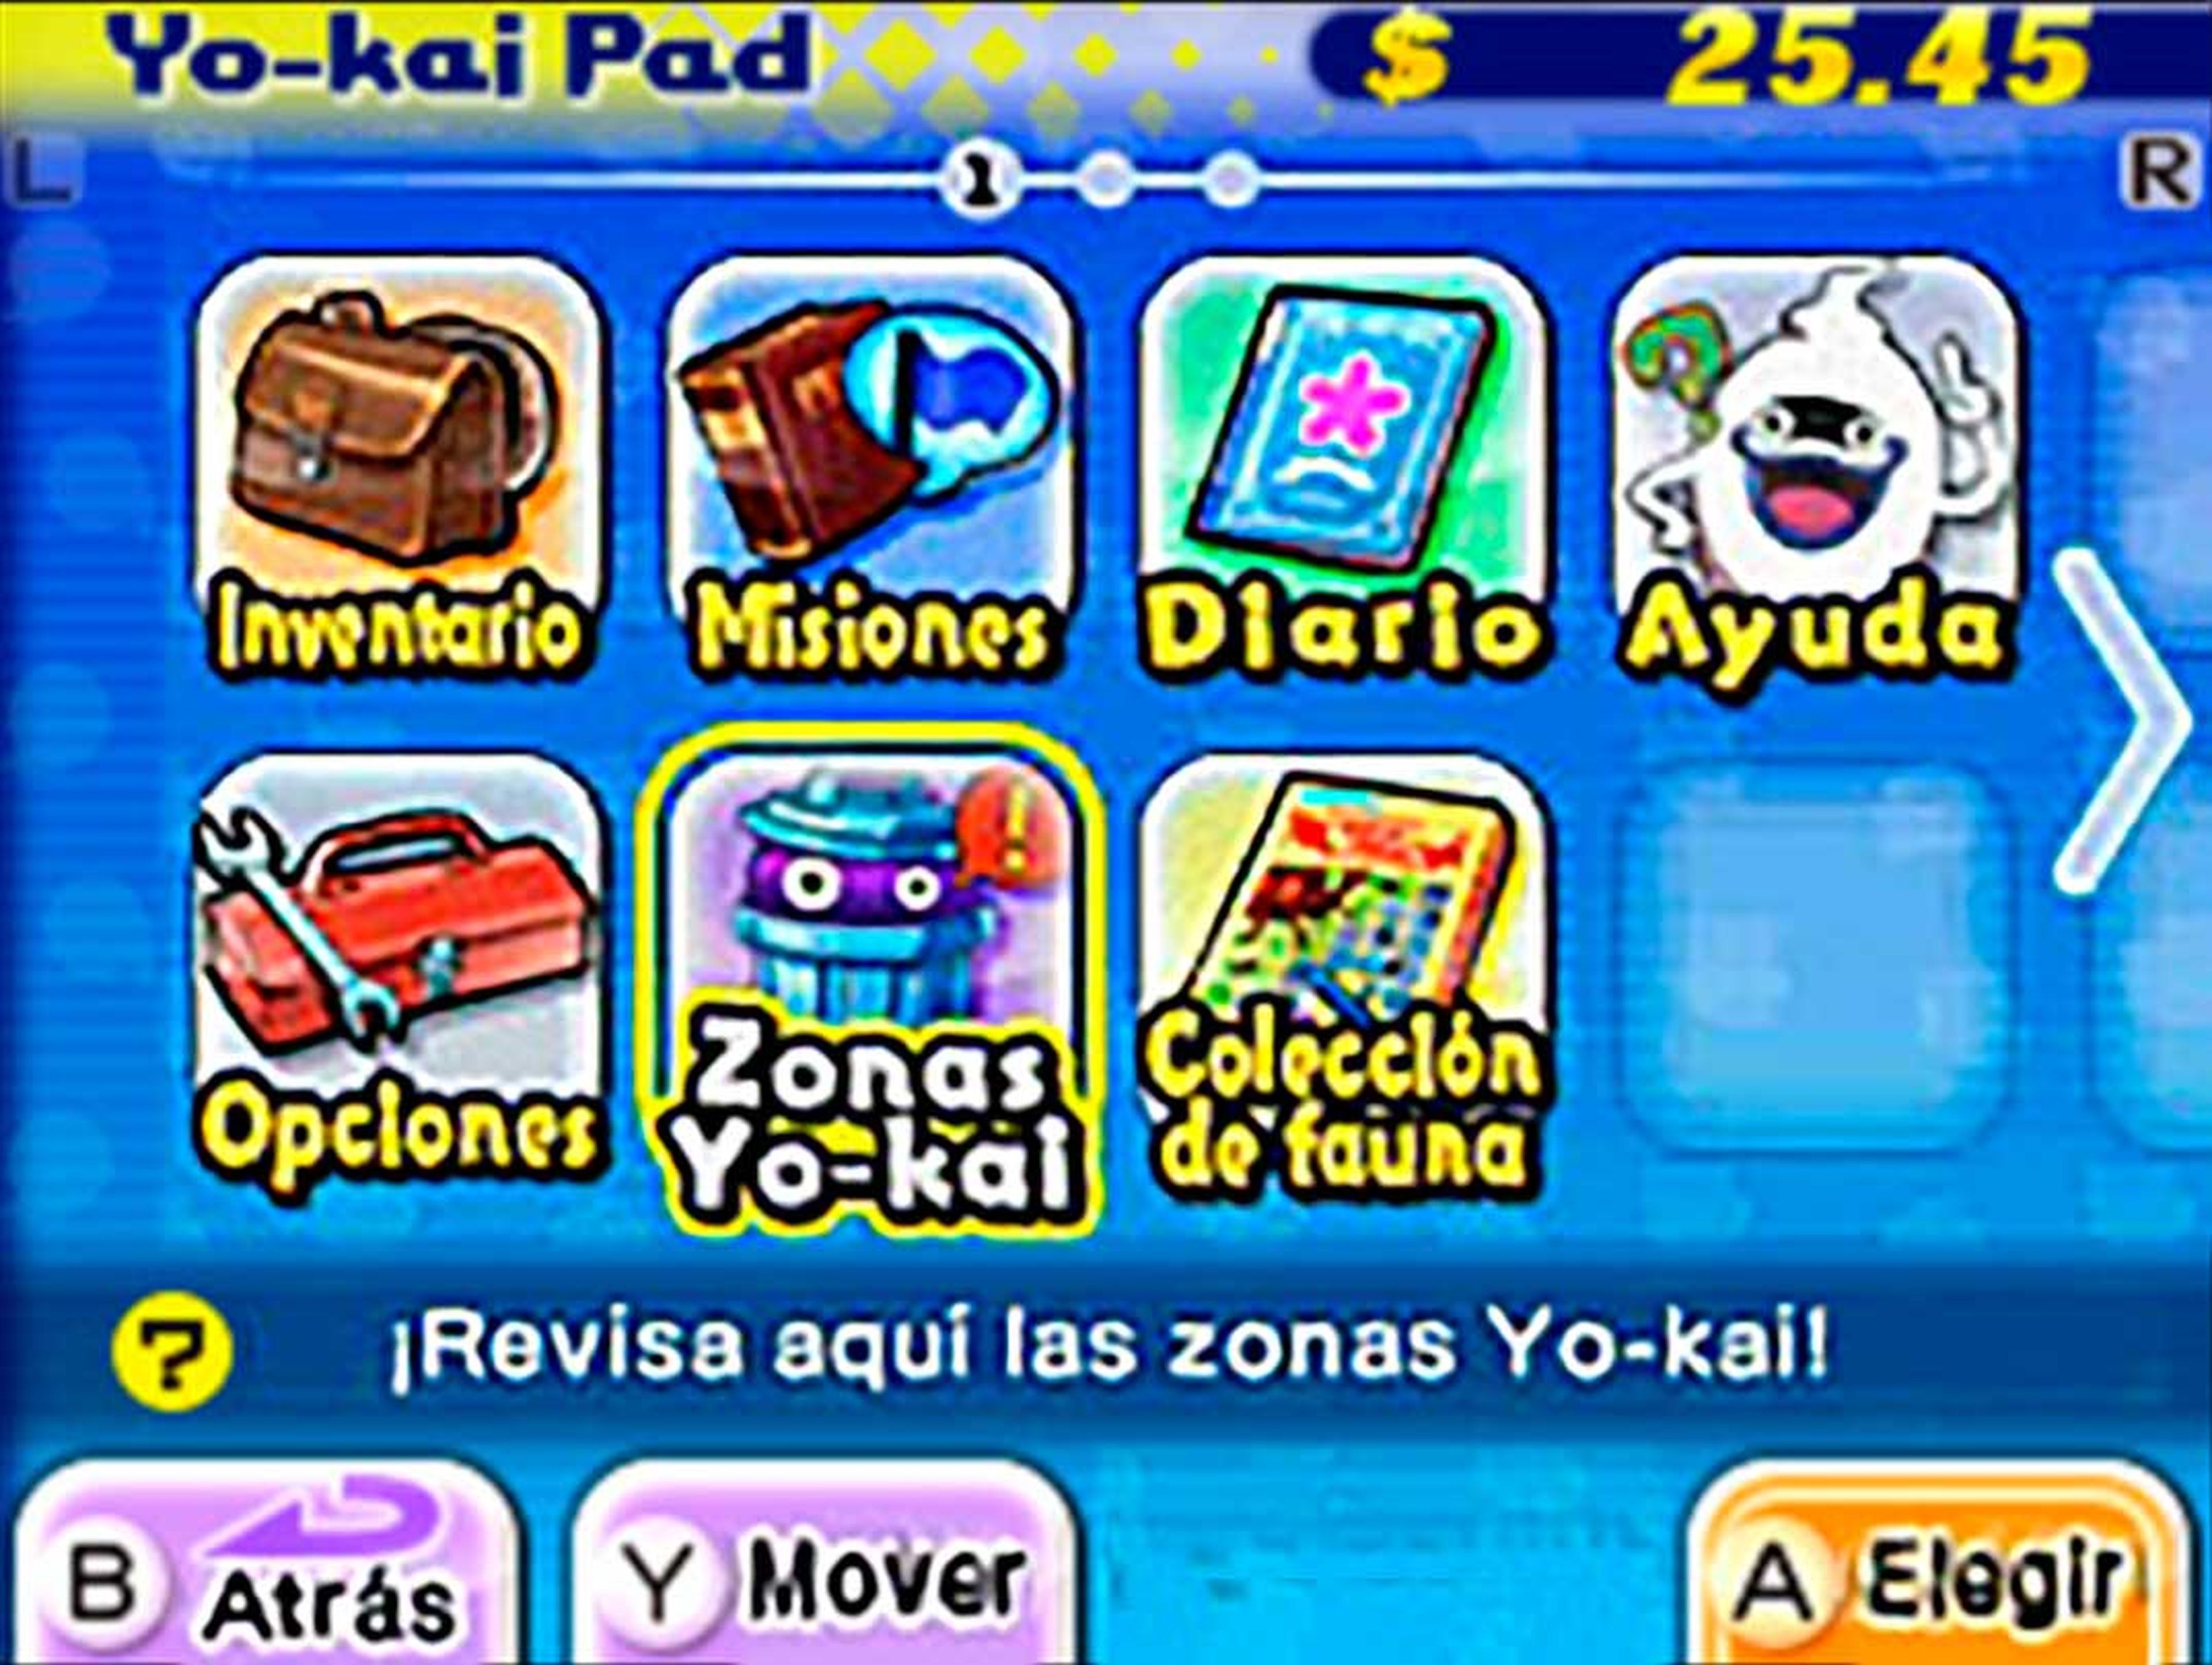 El Yo-Kai Pad es el centro de la experiencia. Desde aquí podremos acceder rápidamente a todas las opciones.